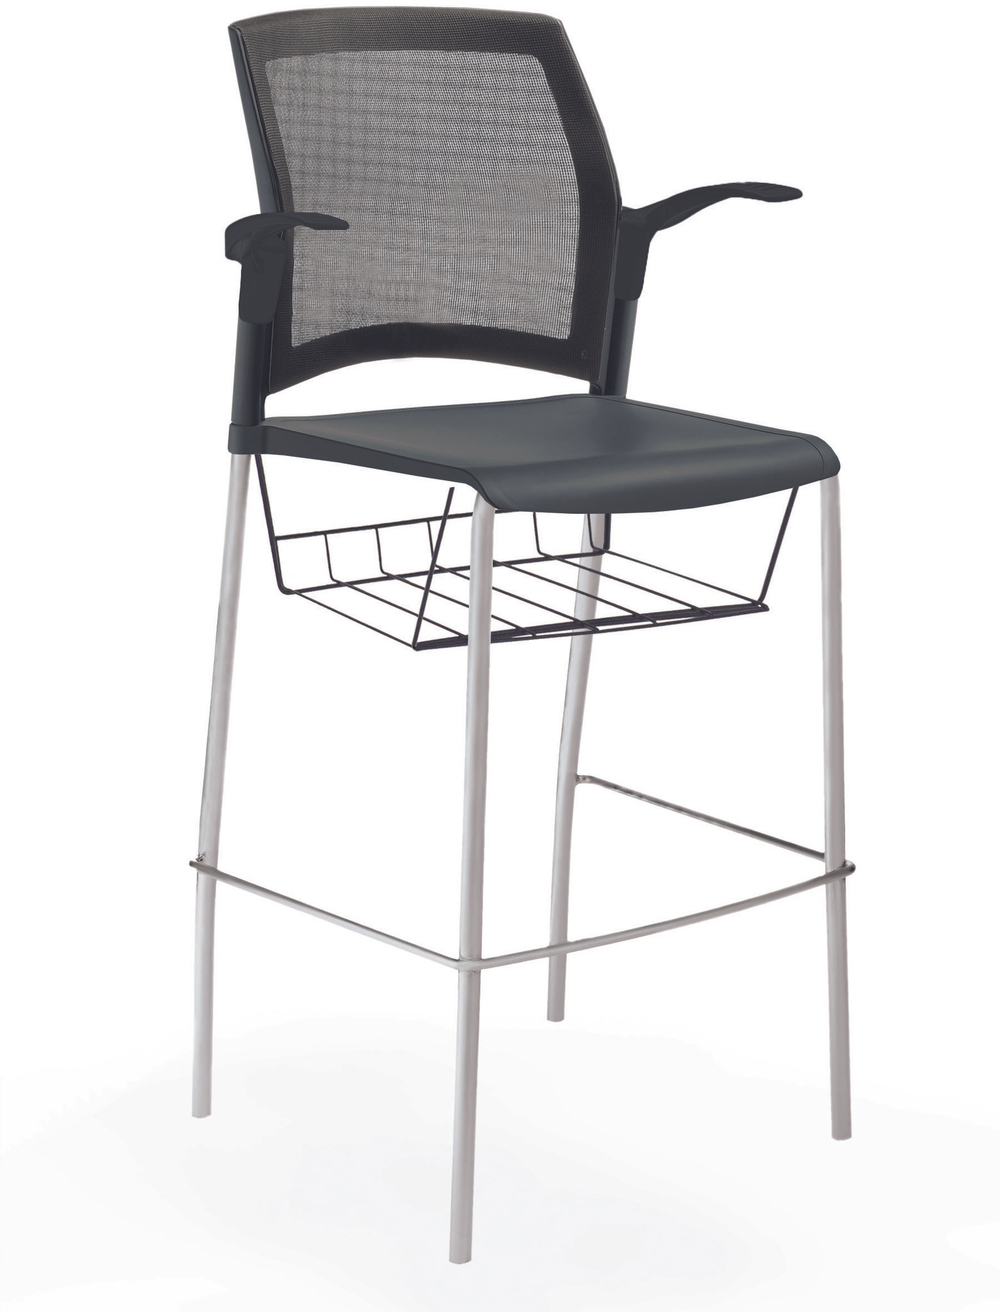 стул Rewind стул барный на 4 ногах, каркас серый, пластик черный, спинка-сетка, с открытыми подлокотниками, с подседельной корзиной